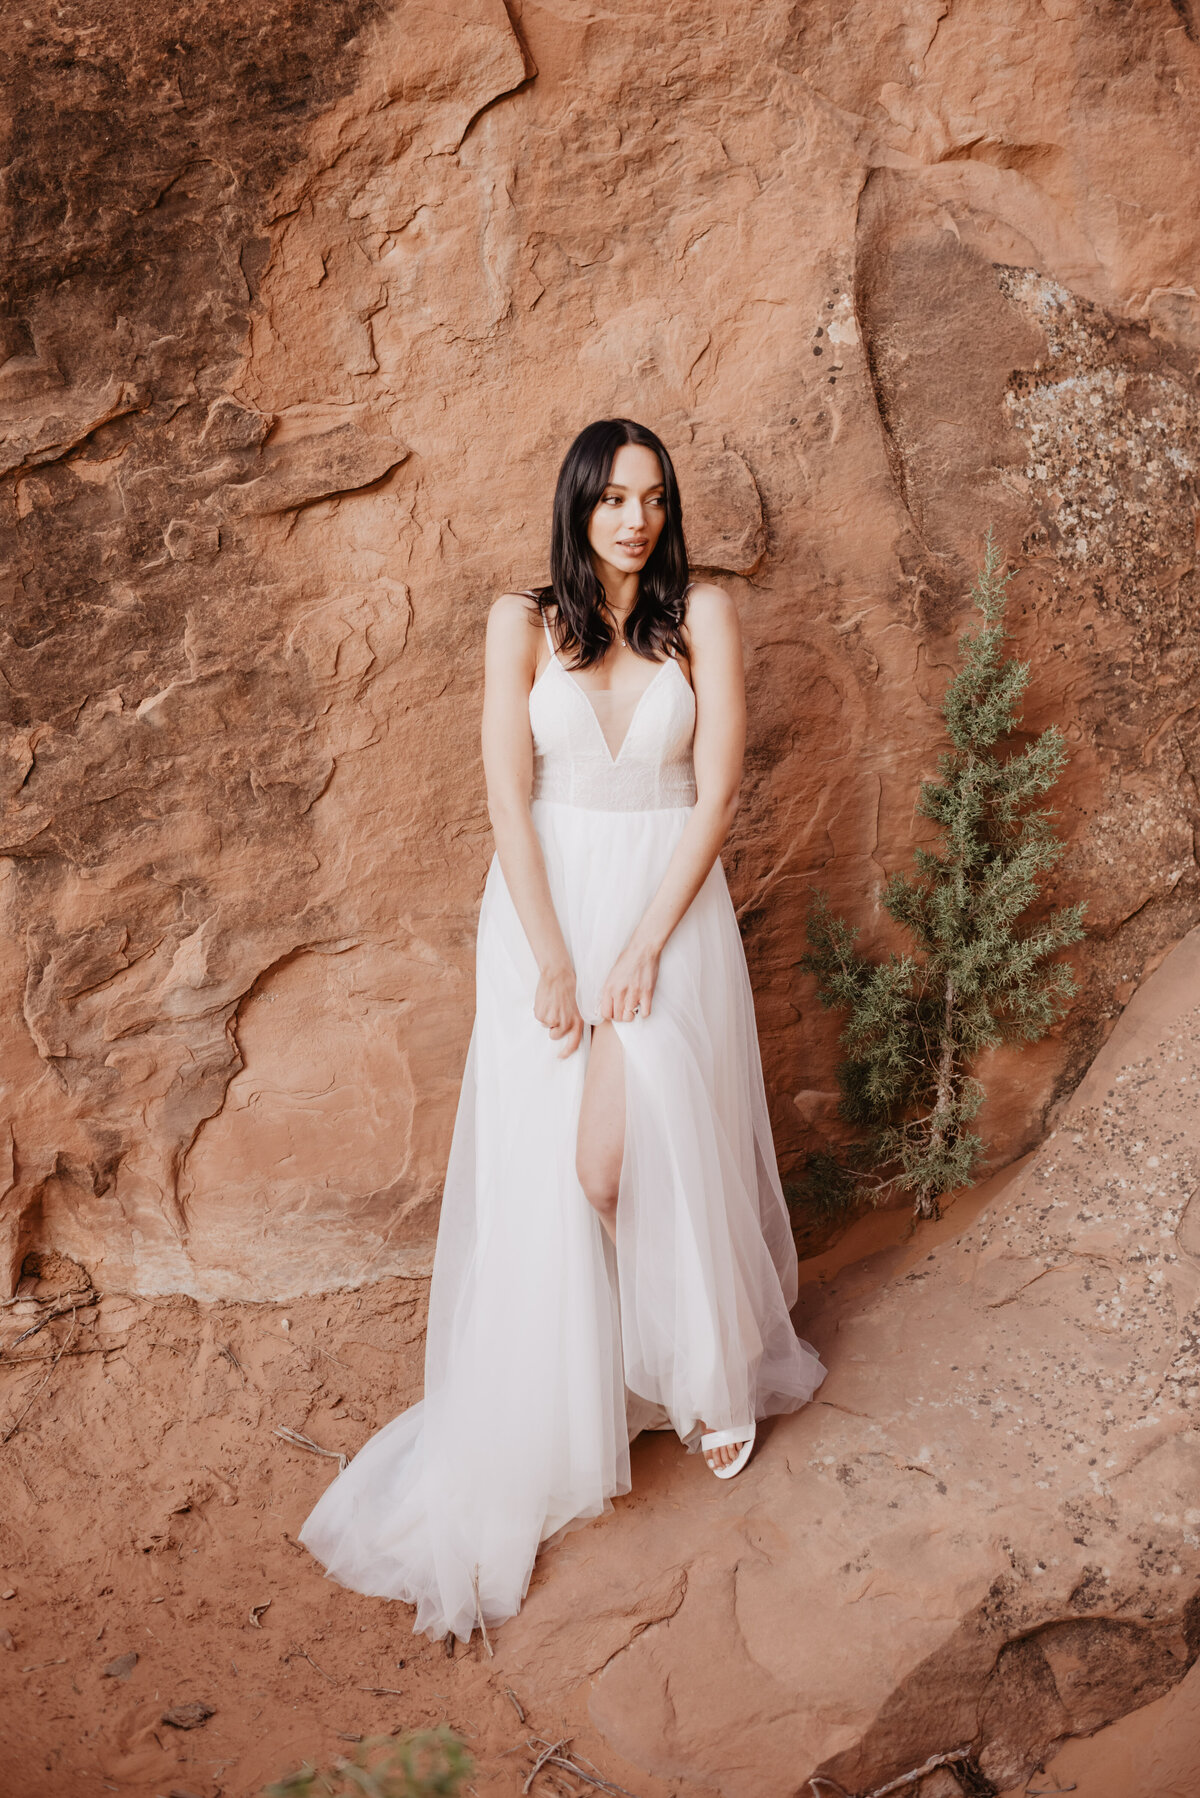 Utah elopement photographer captures bride looking over shoulder